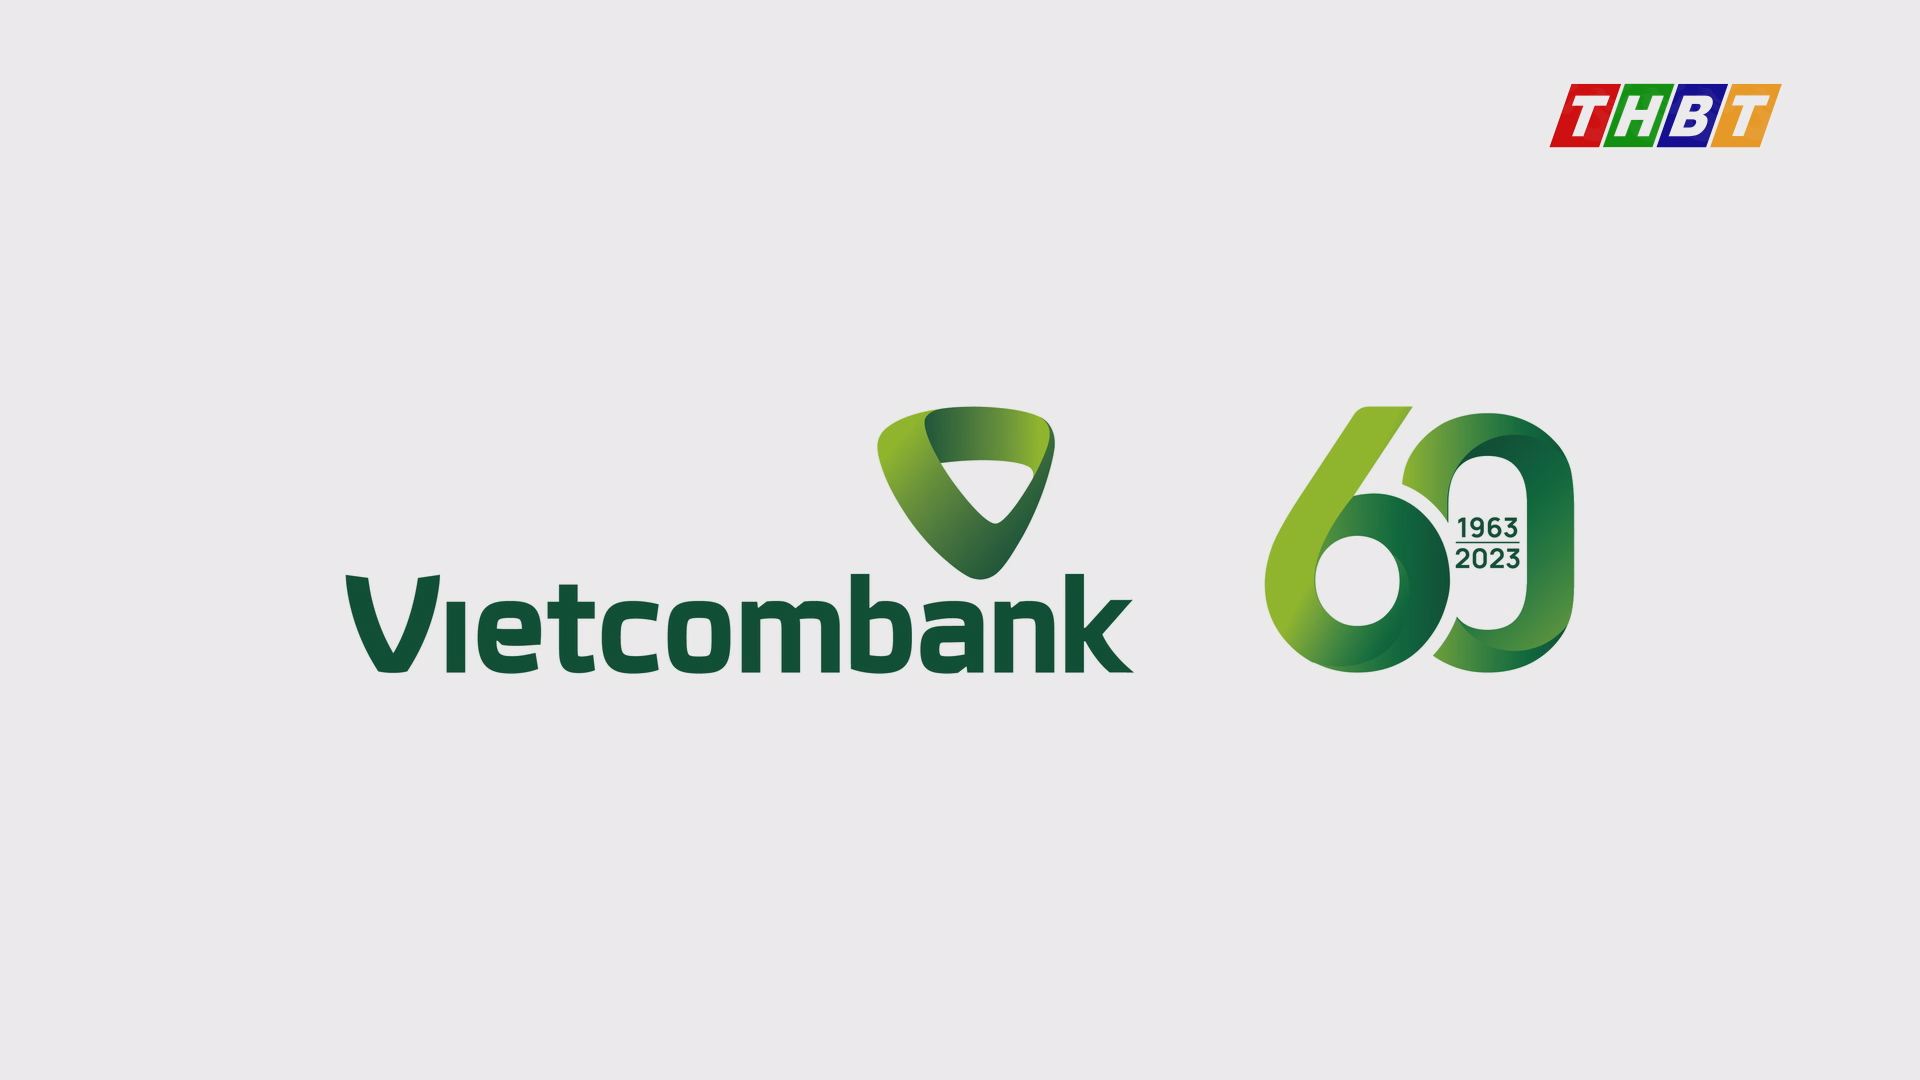 60 năm lớn mạnh cùng đất nước. Vietcombank – Chung niềm tin – Vững tương lai